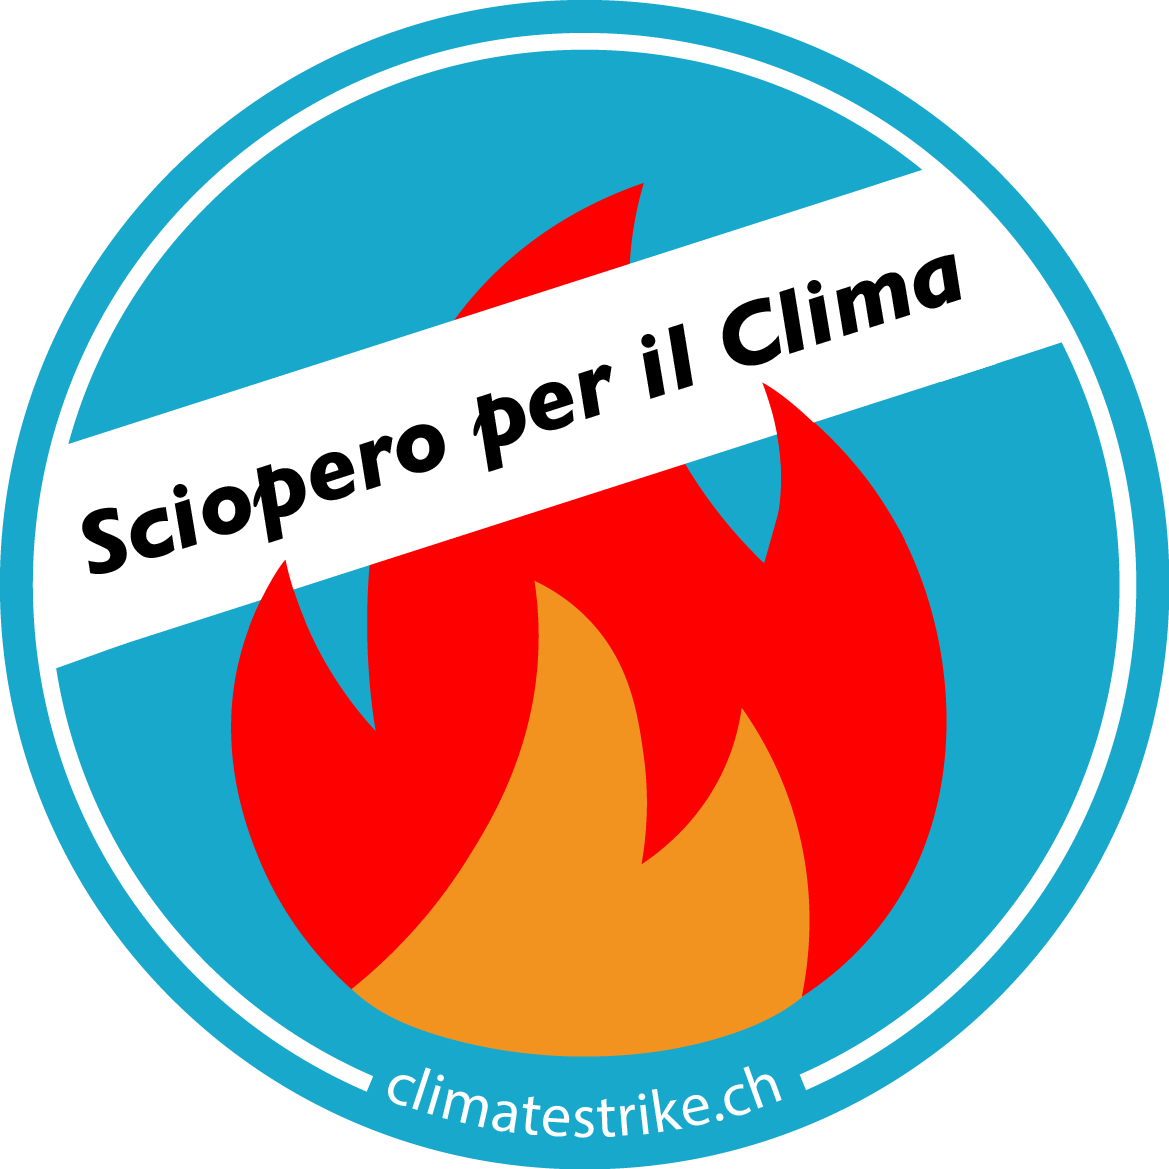 Sciopero per il clima Ticino